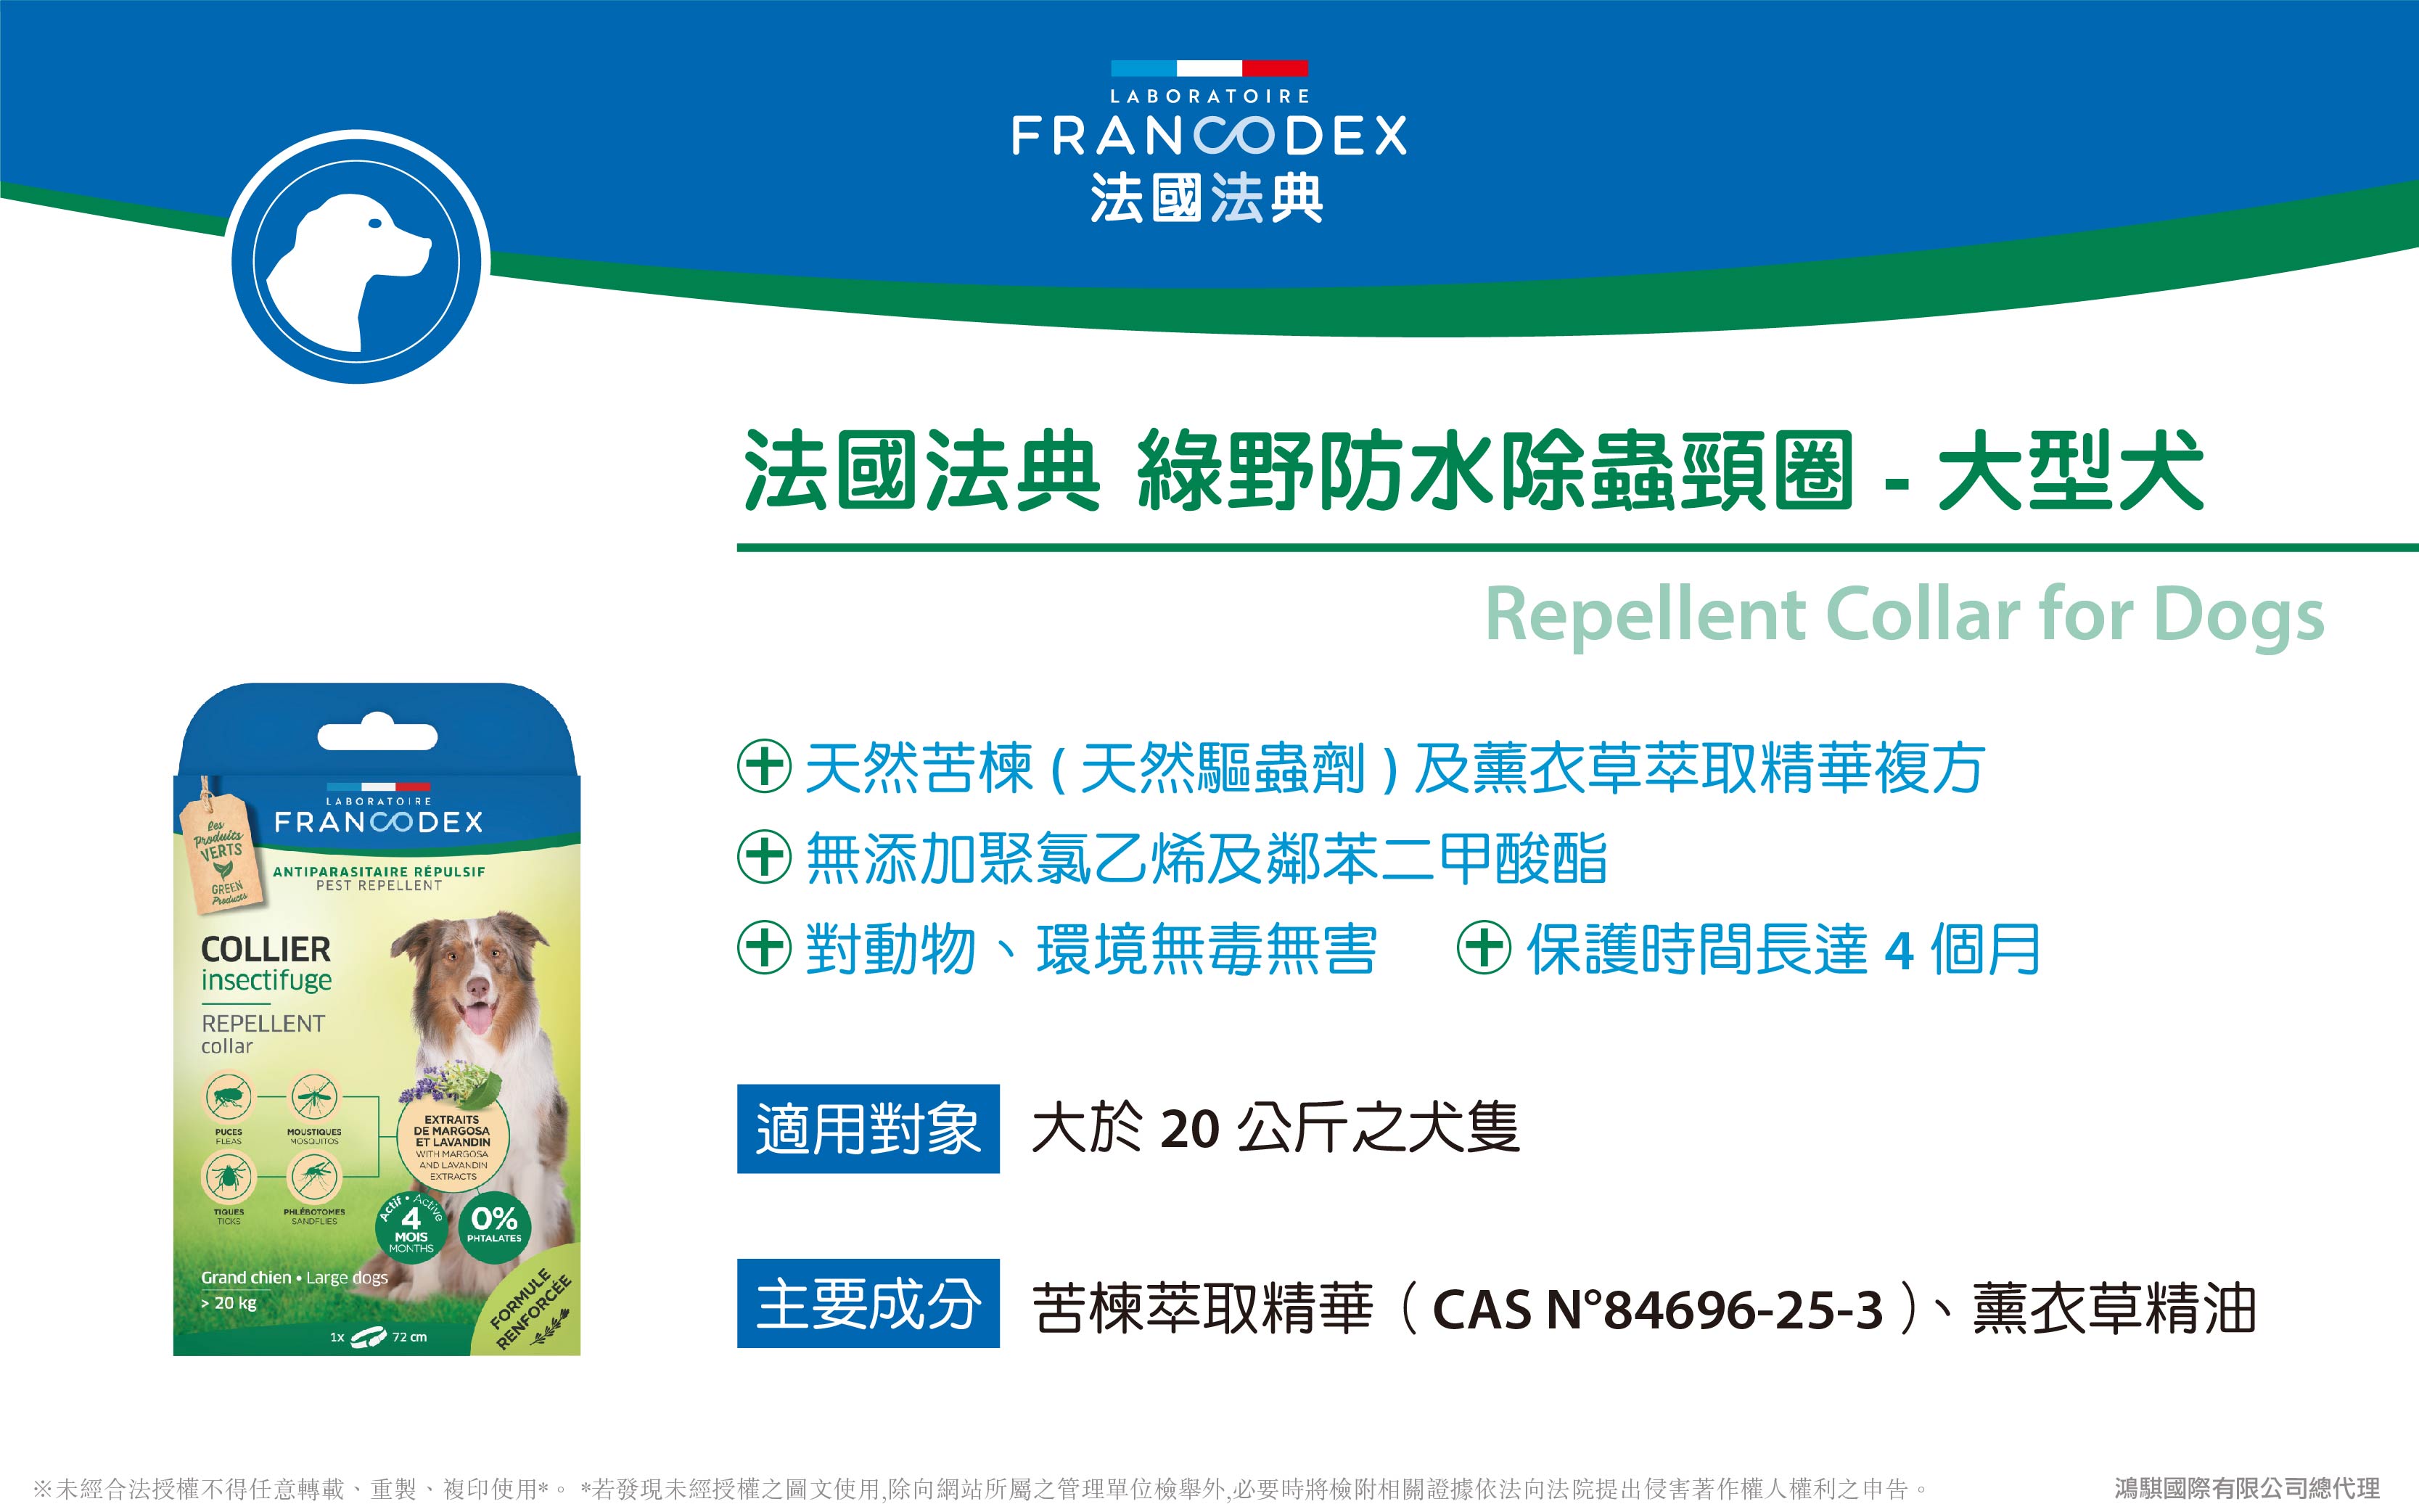 【Francodex】官網-產品介紹_11法國法典綠野防水除蟲頸圈-大型犬